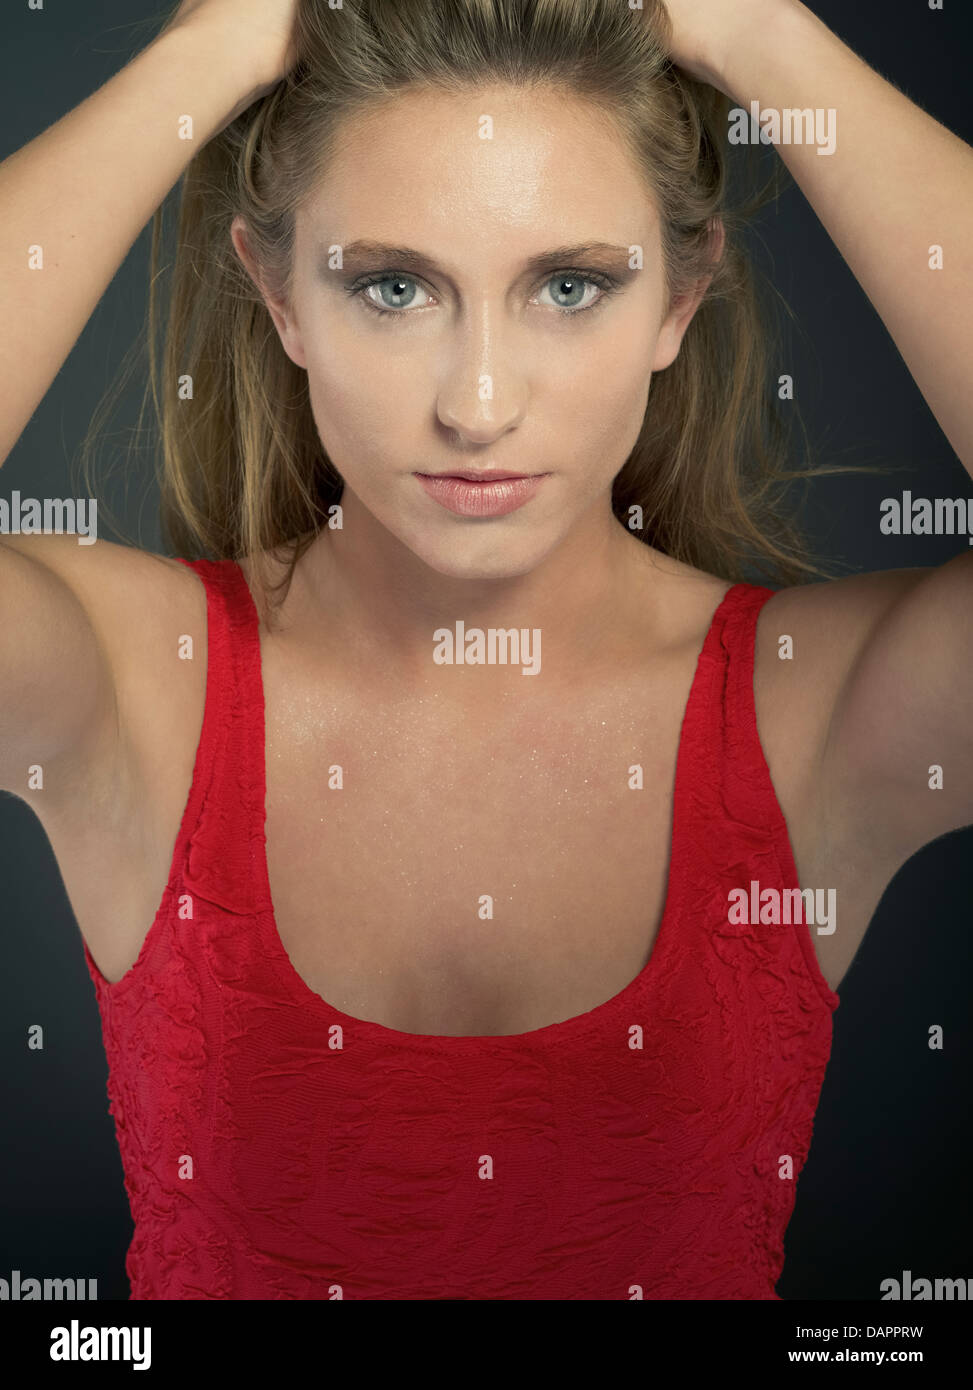 Studio Ritratto di giovane bella donna bionda in abito rosso Foto Stock